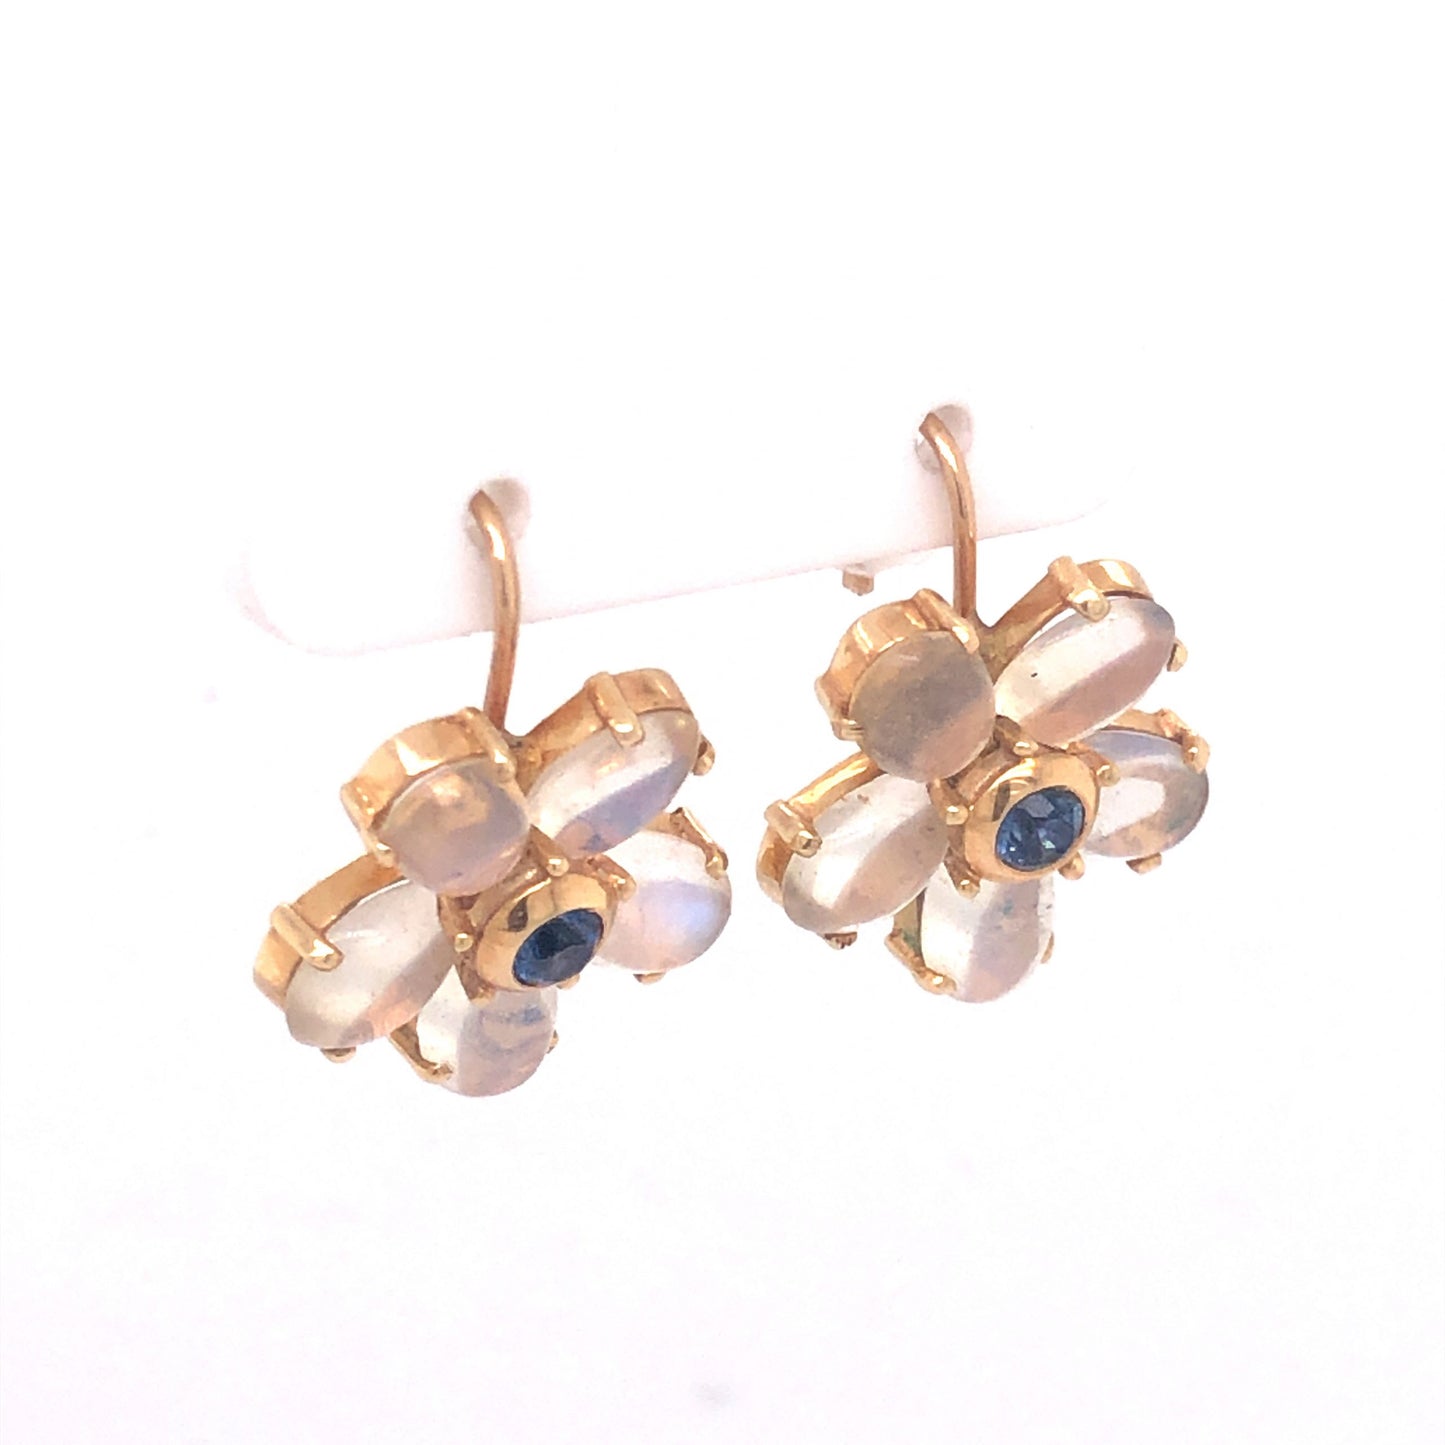 Moonstone & Sapphire Earrings in 14k Yellow Gold